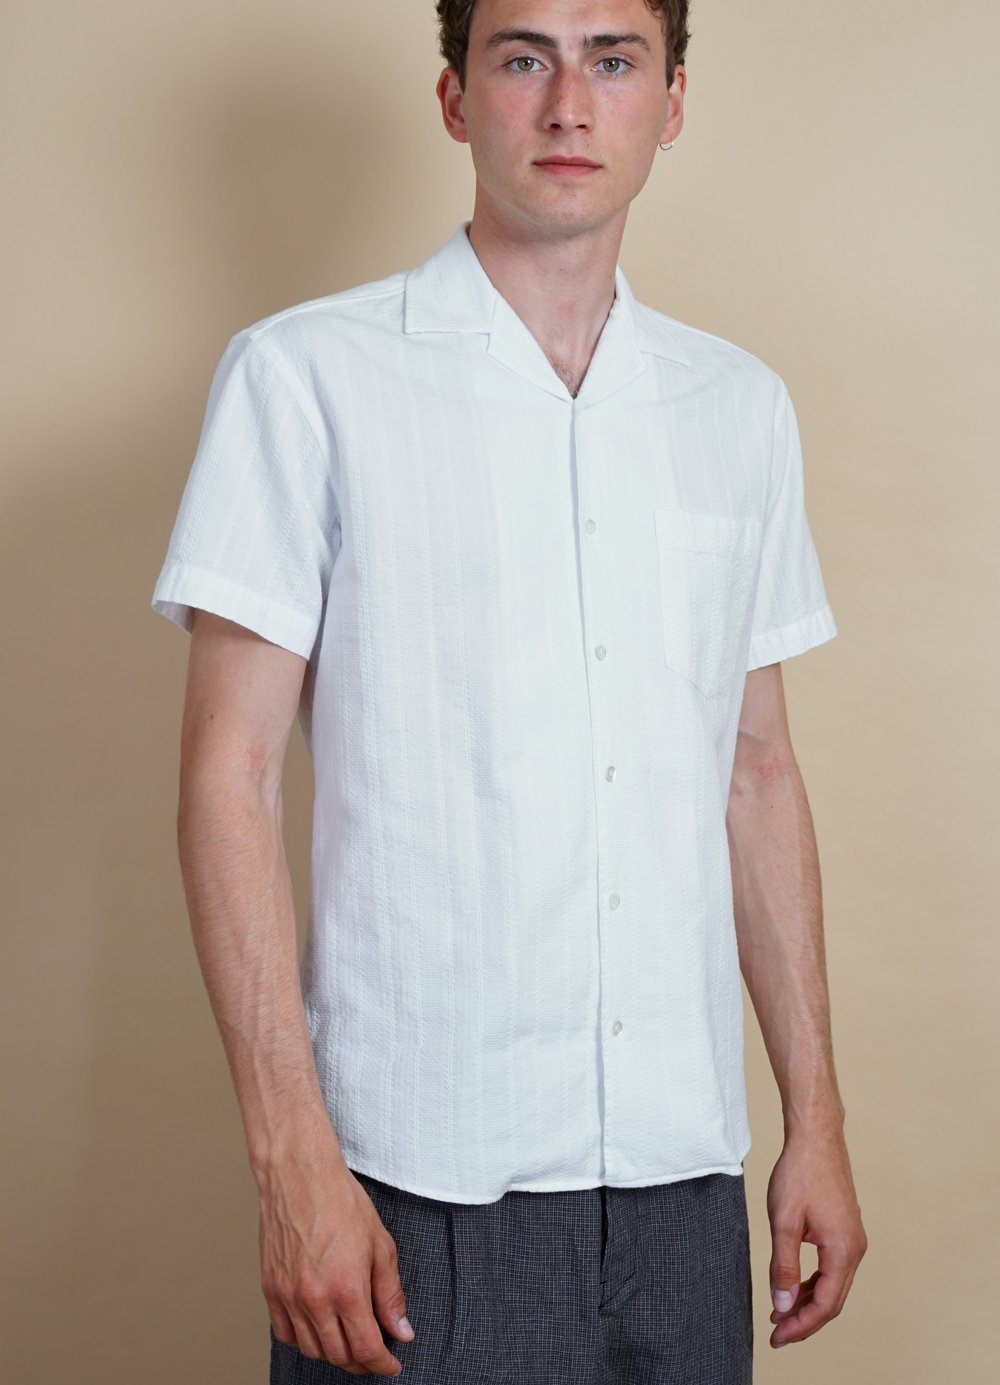 HANSEN GARMENTS - JONNY | Short Sleeve Shirt | White Dobby - HANSEN Garments